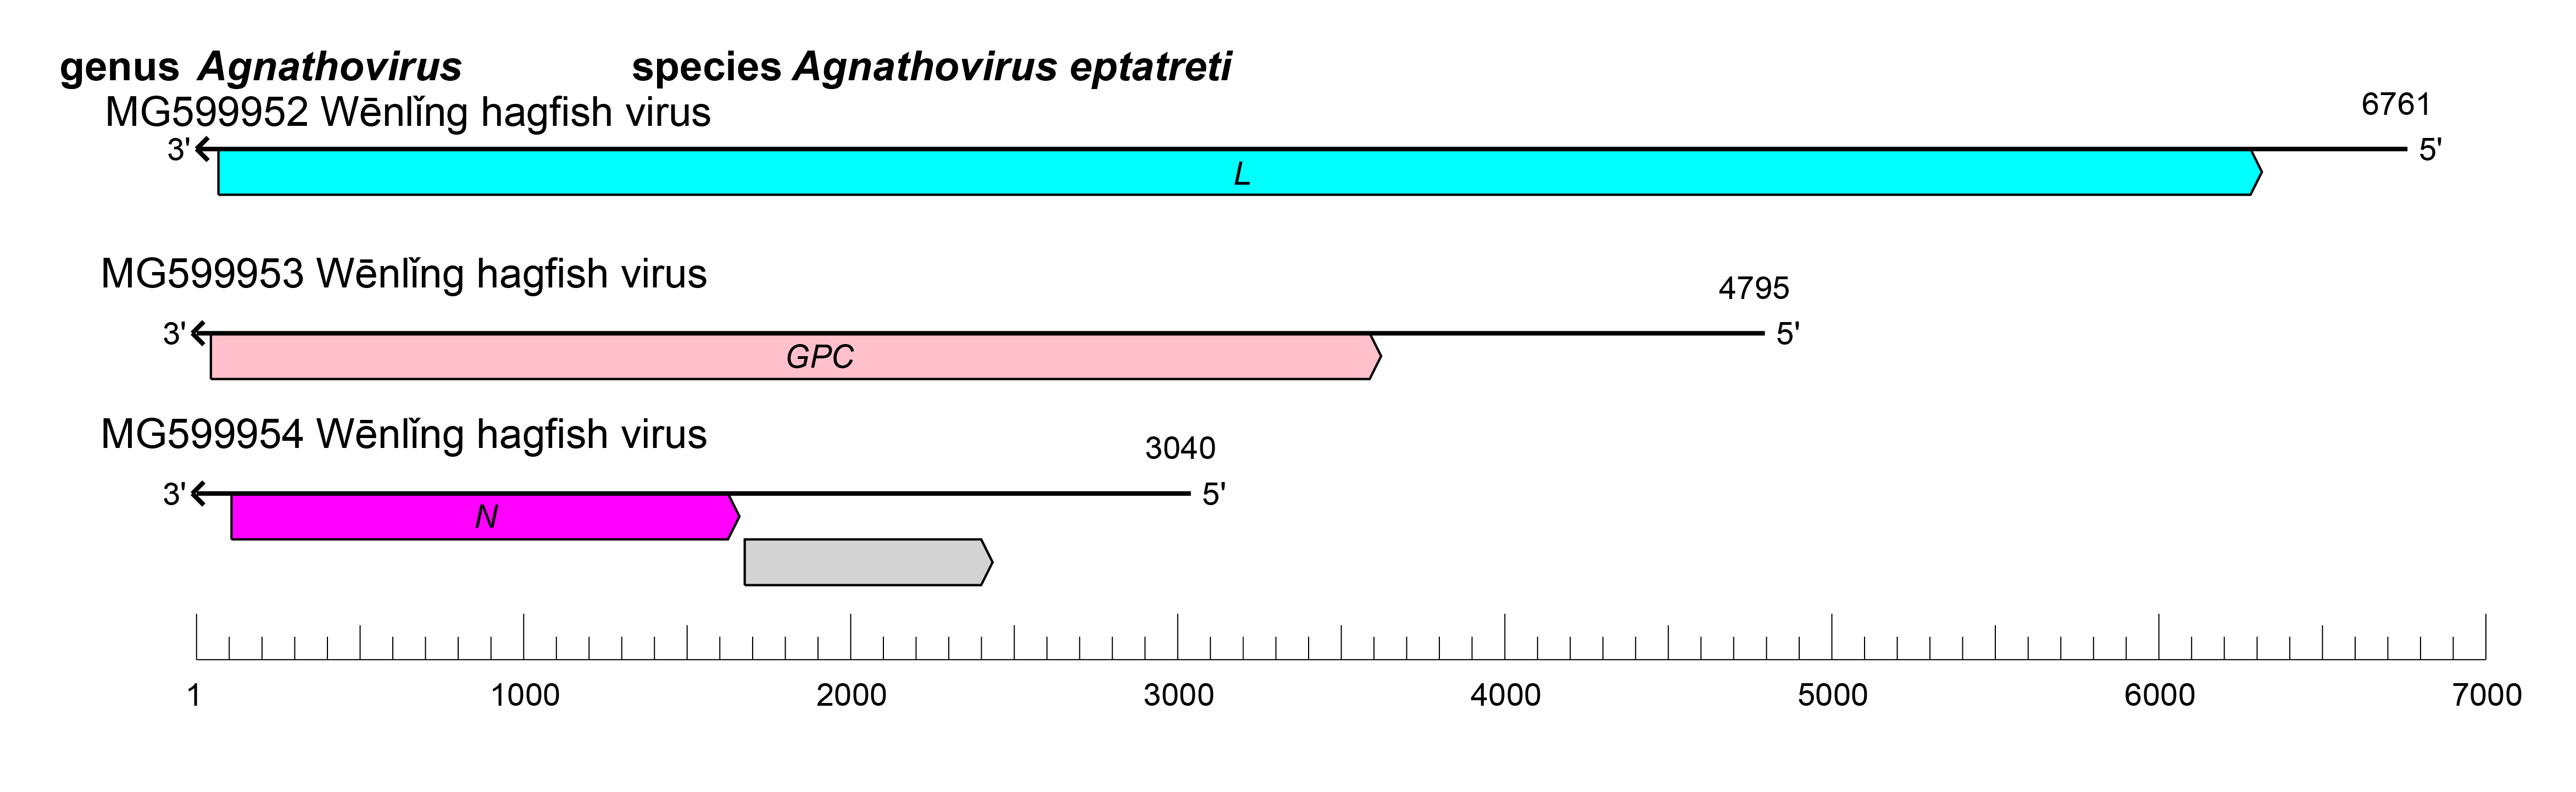 Agnathovirus genome